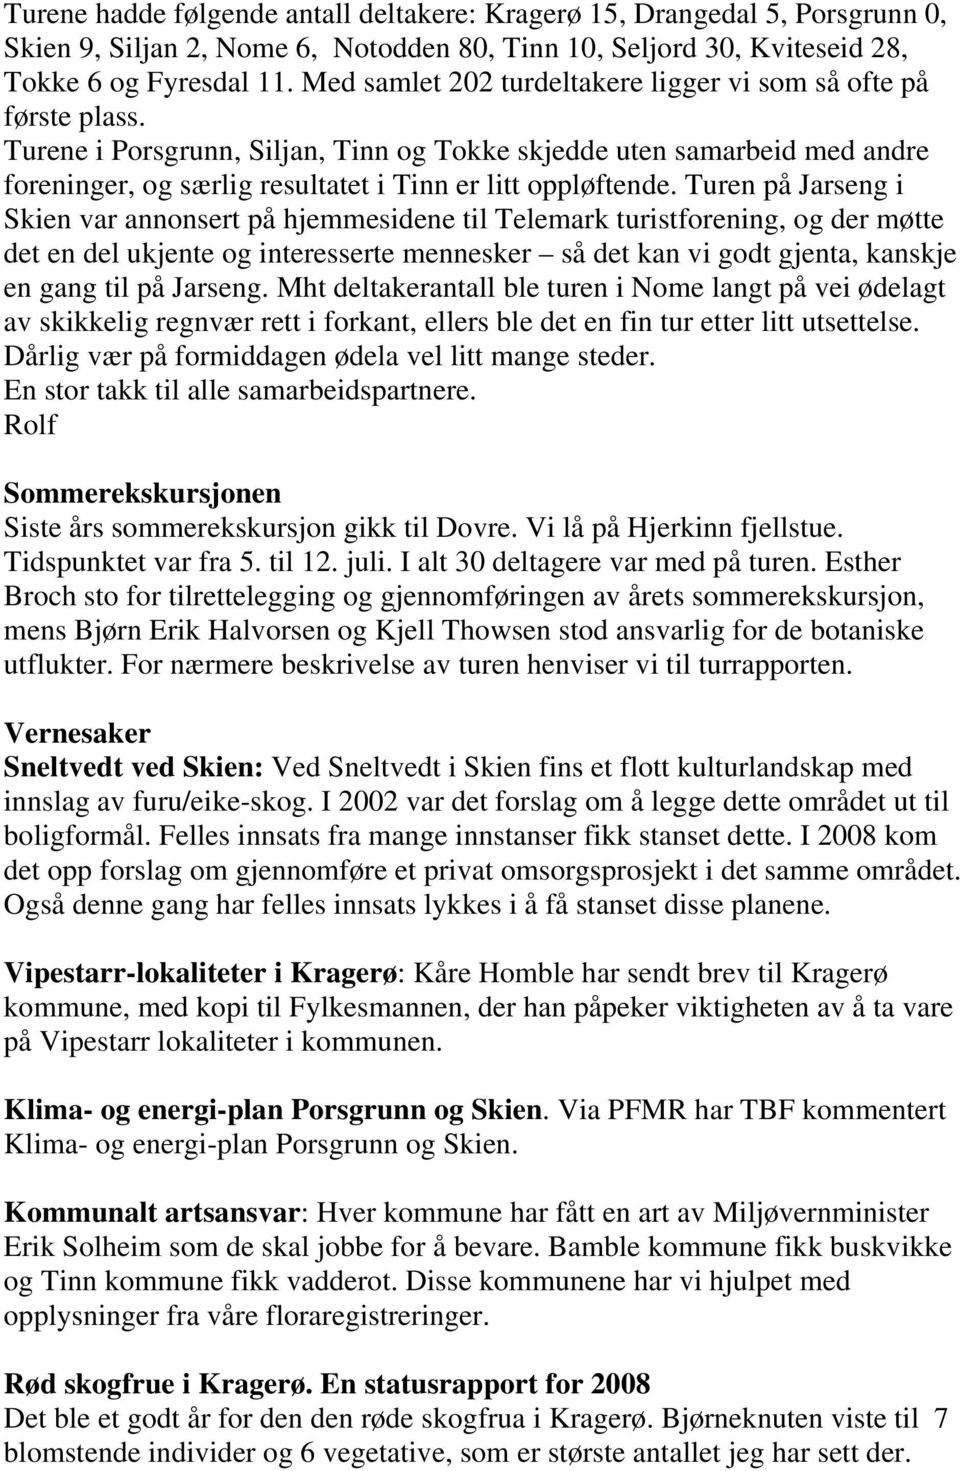 Turene i Porsgrunn, Siljan, Tinn og Tokke skjedde uten samarbeid med andre foreninger, og særlig resultatet i Tinn er litt oppløftende.